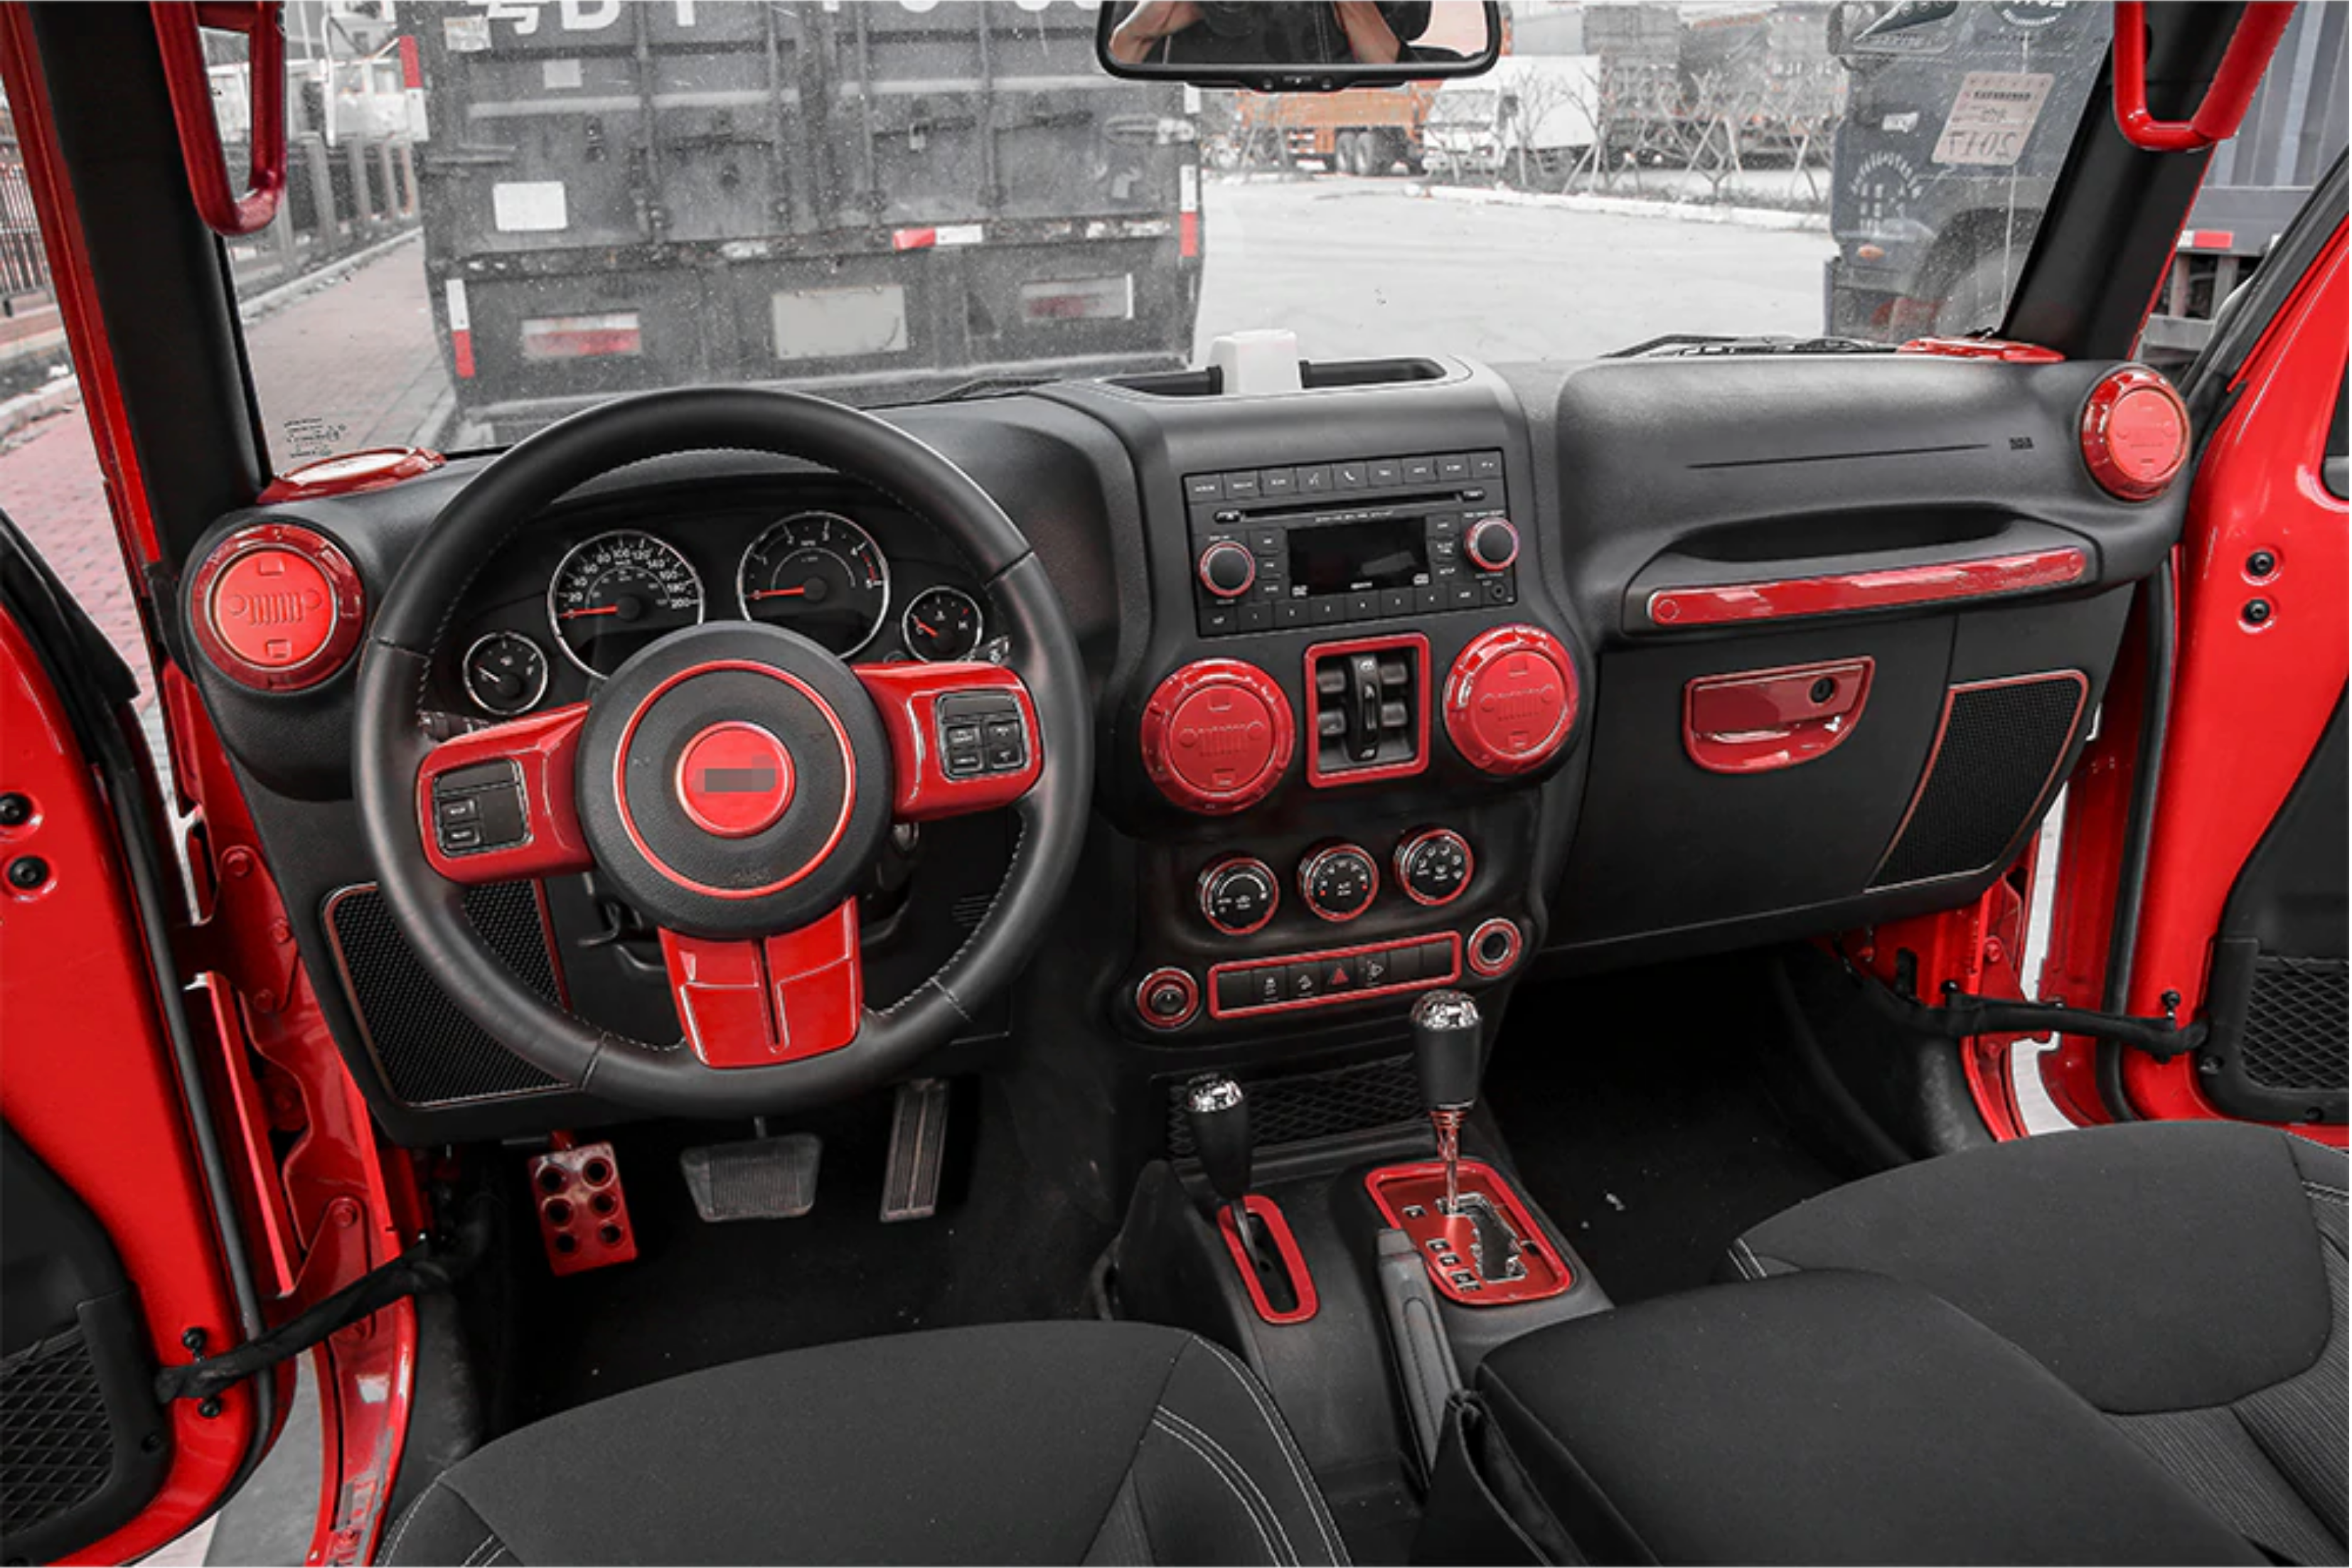  18 PCS Full Set Interior Trim Kit Fit for Jeep Wrangler JK JKU  2011-2018 2-Door&4-Door - Steering Wheel & Center Console Trim, Door Handle  & Cup Cover (Red) : Automotive